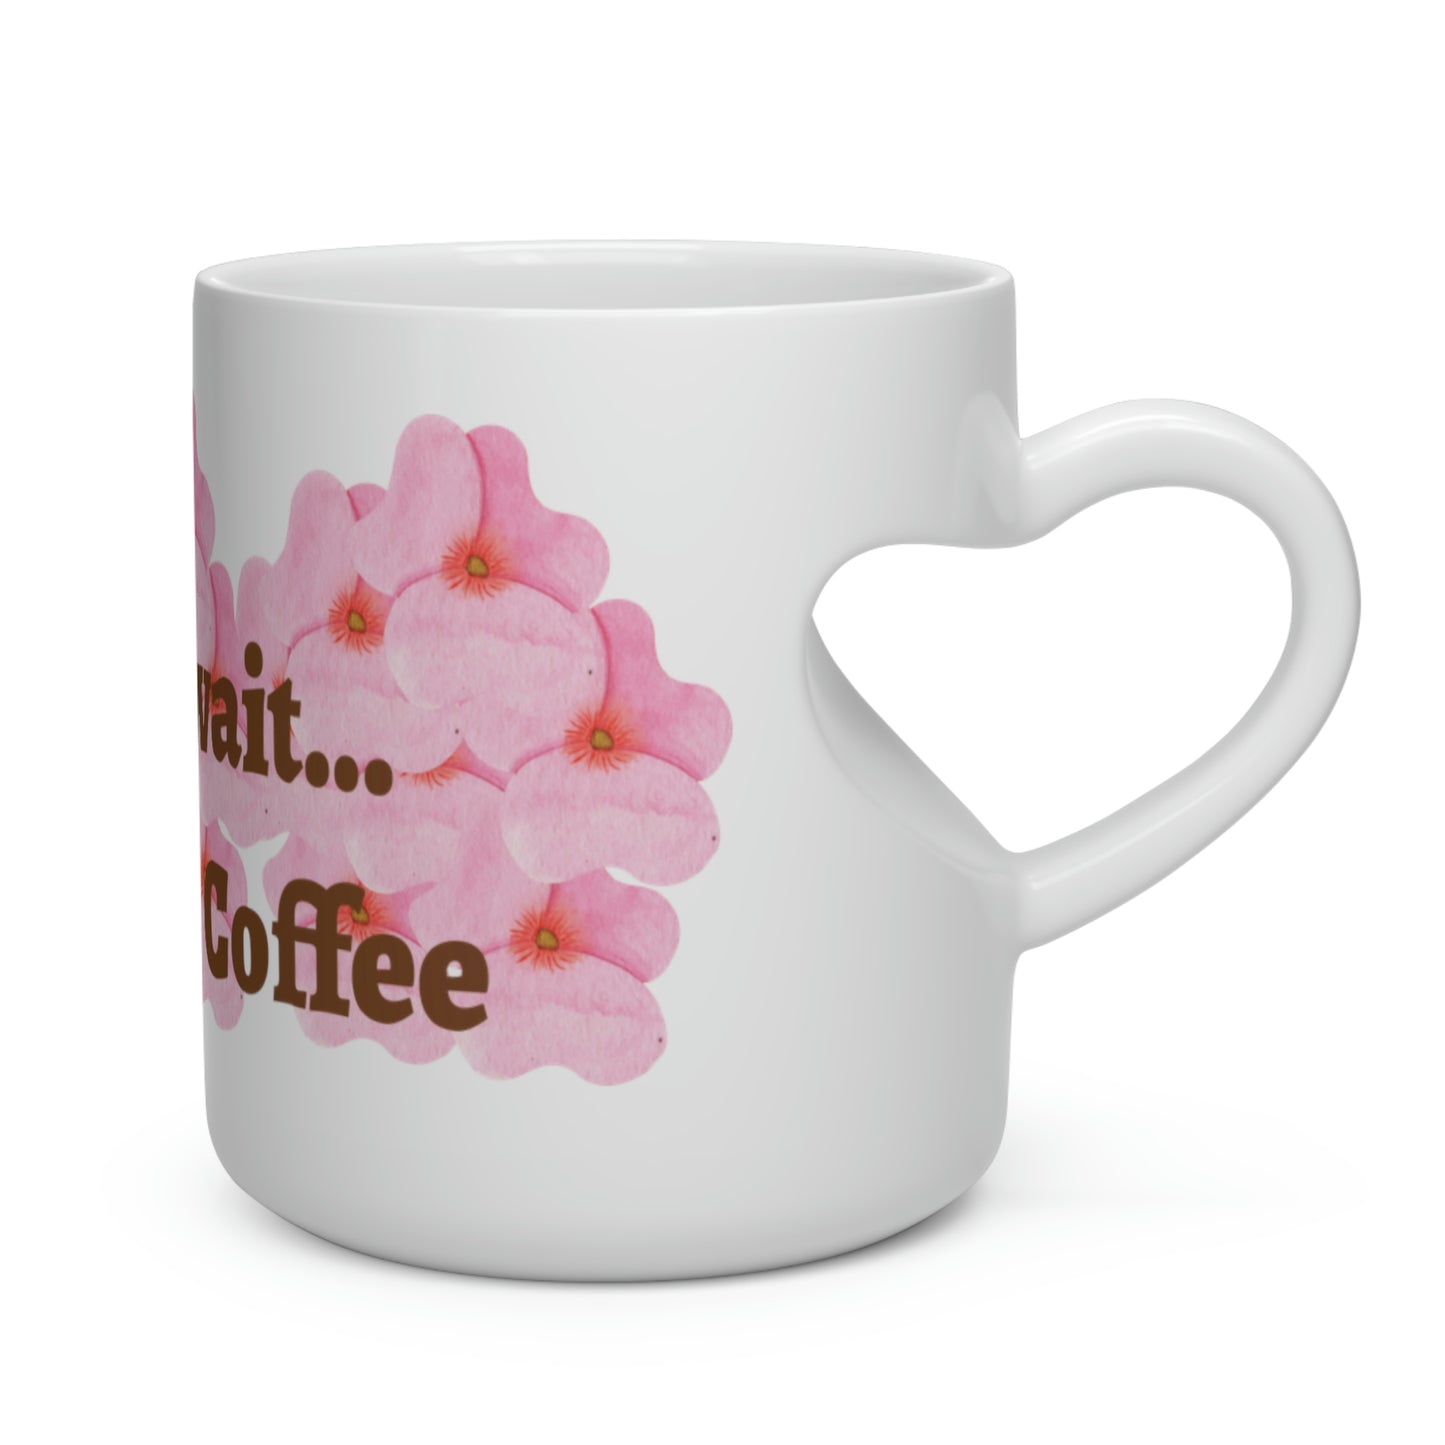 But Wait Coffee... Heart Shape Mug